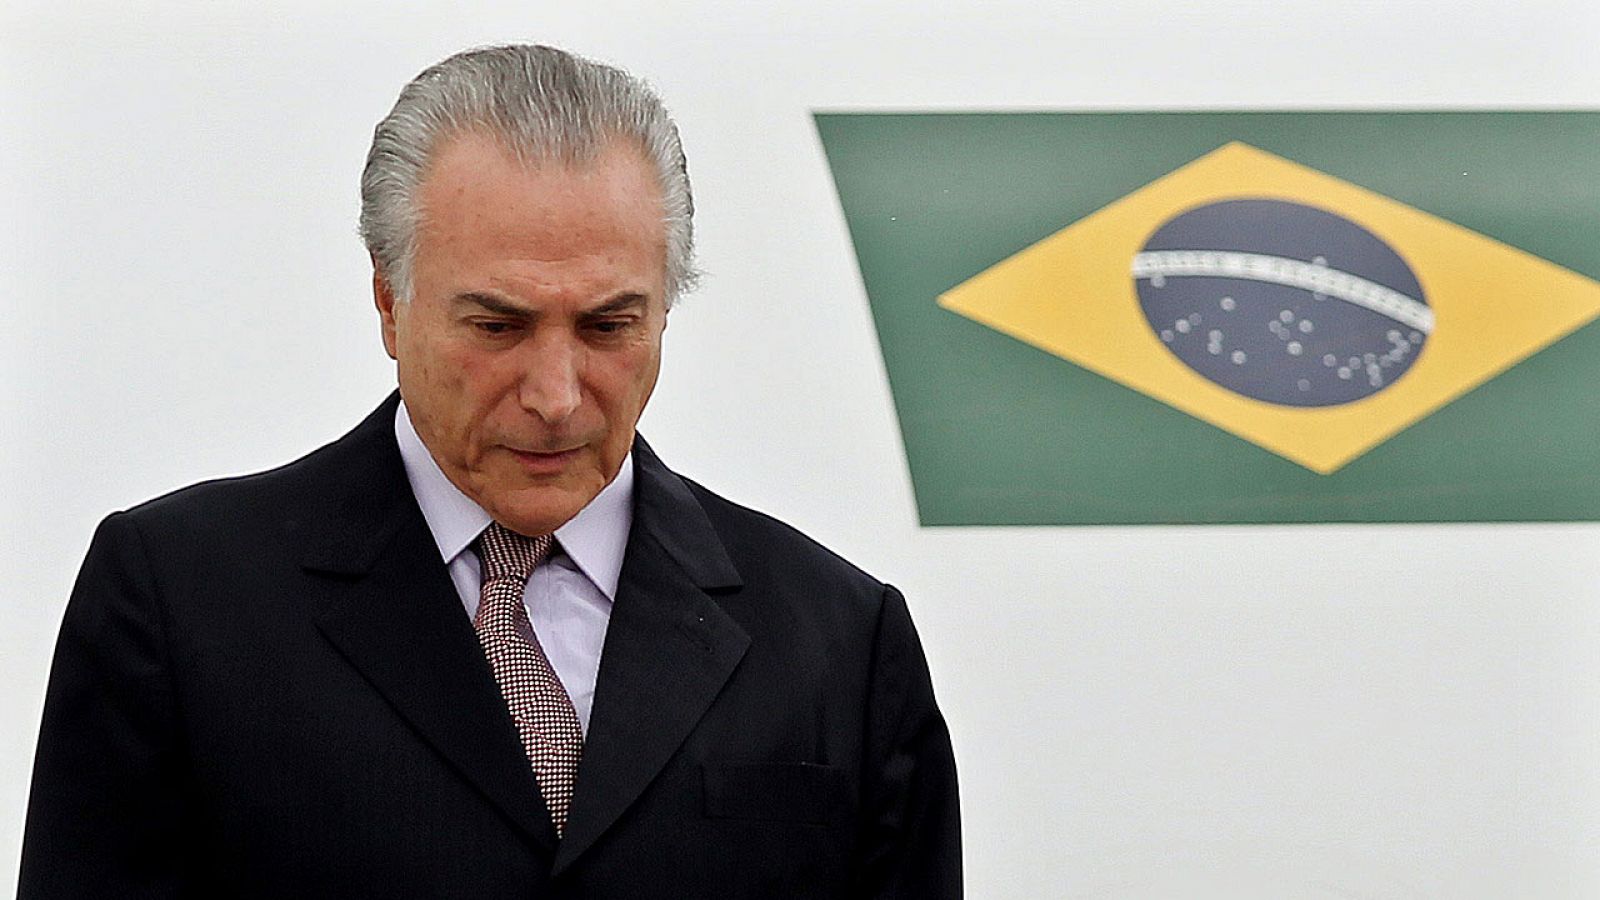 El presidente interino de Brasil, Michel Temer, ha dado el salto el sillón de Rousseff.